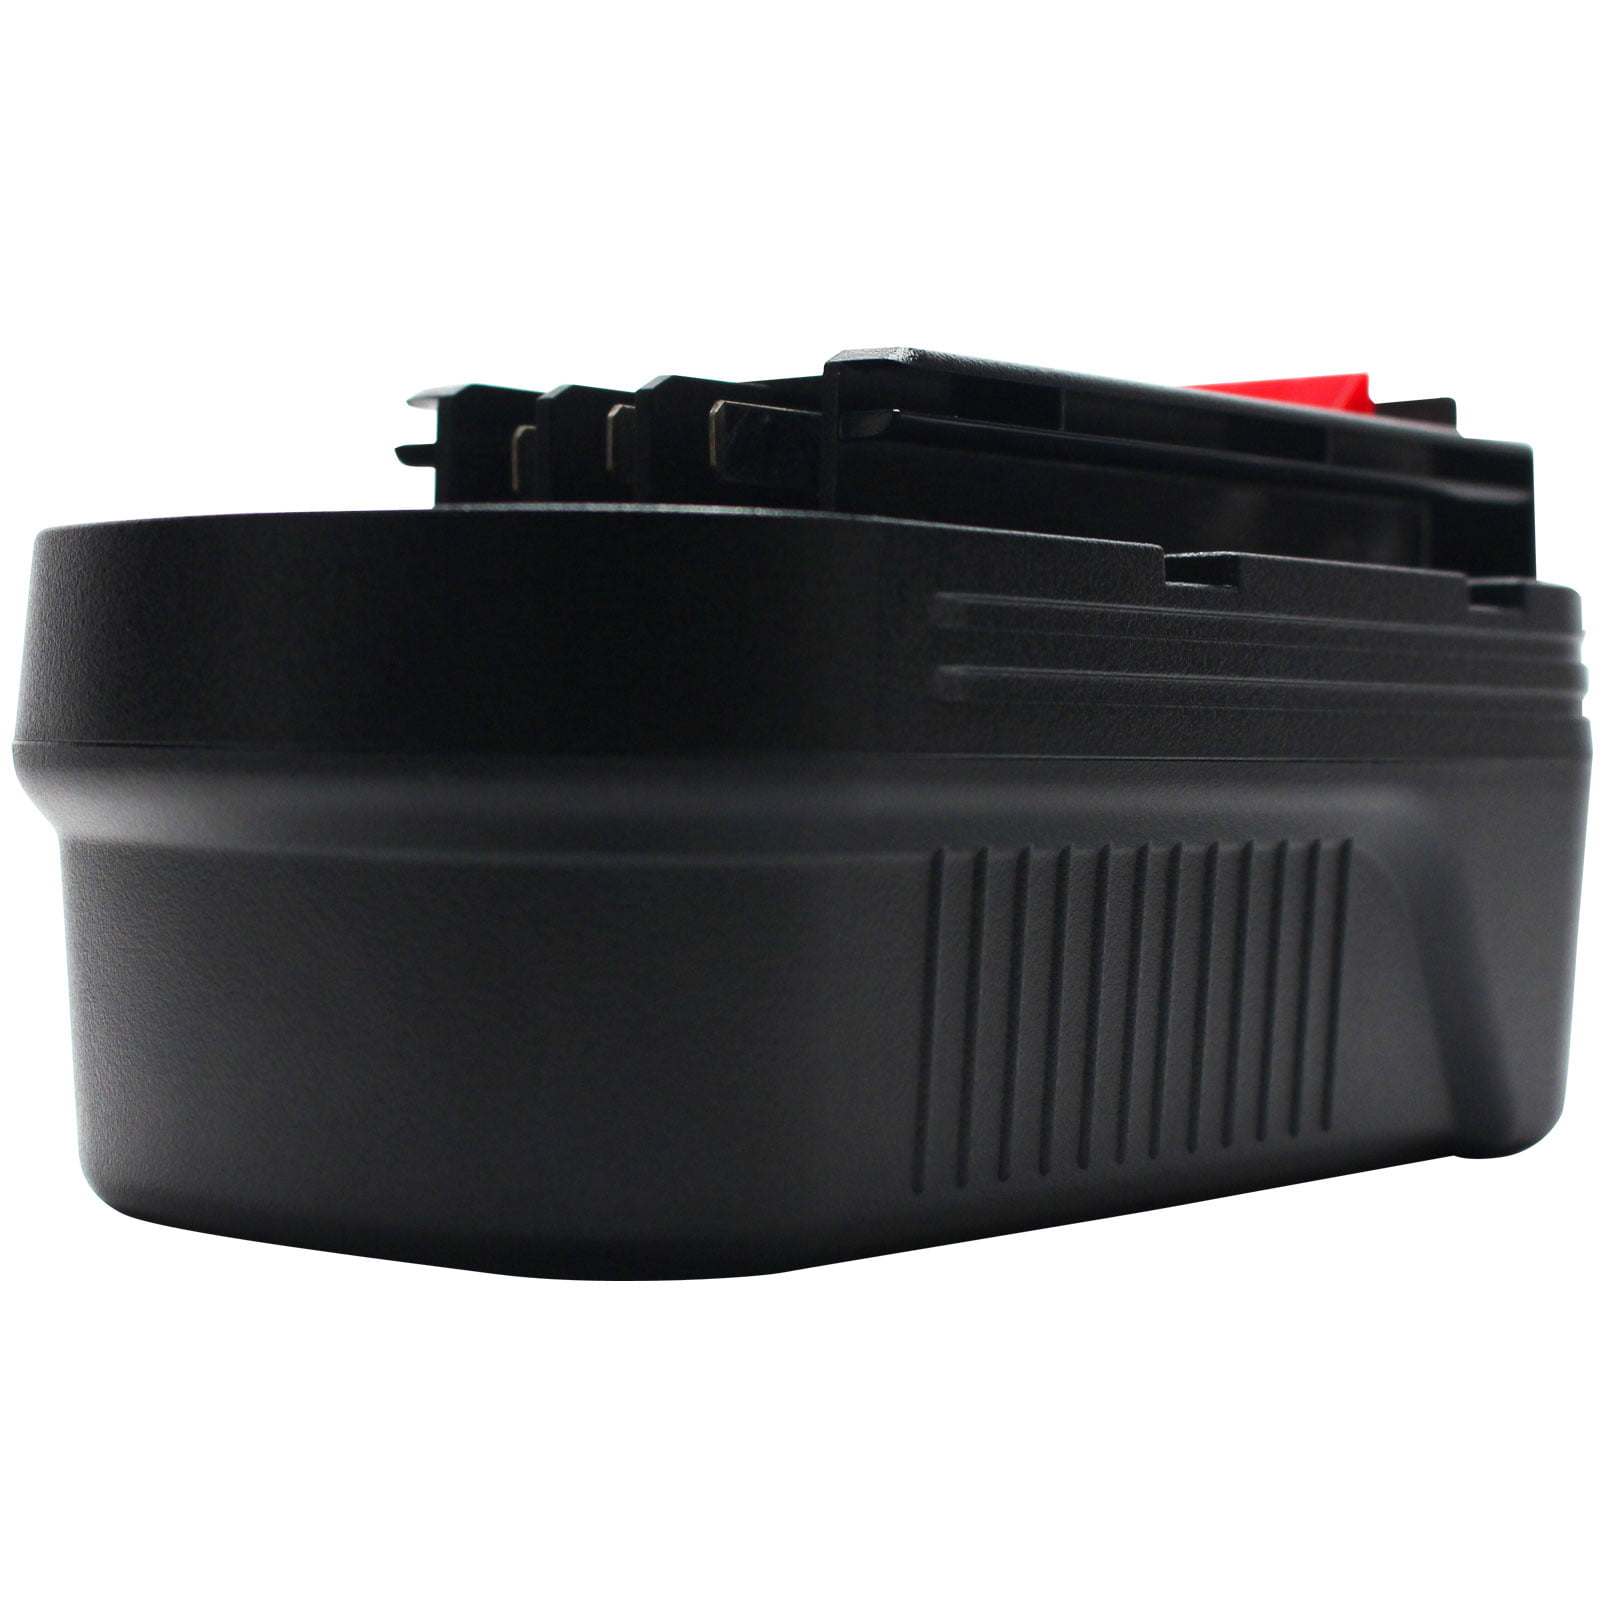 Batería de repuesto Black & Decker HPB18 de 18 V (1500 mAh, NiCd),  compatible con Black & Decker HPB18-OPE, Black & Decker A18, Black & Decker  HPB18